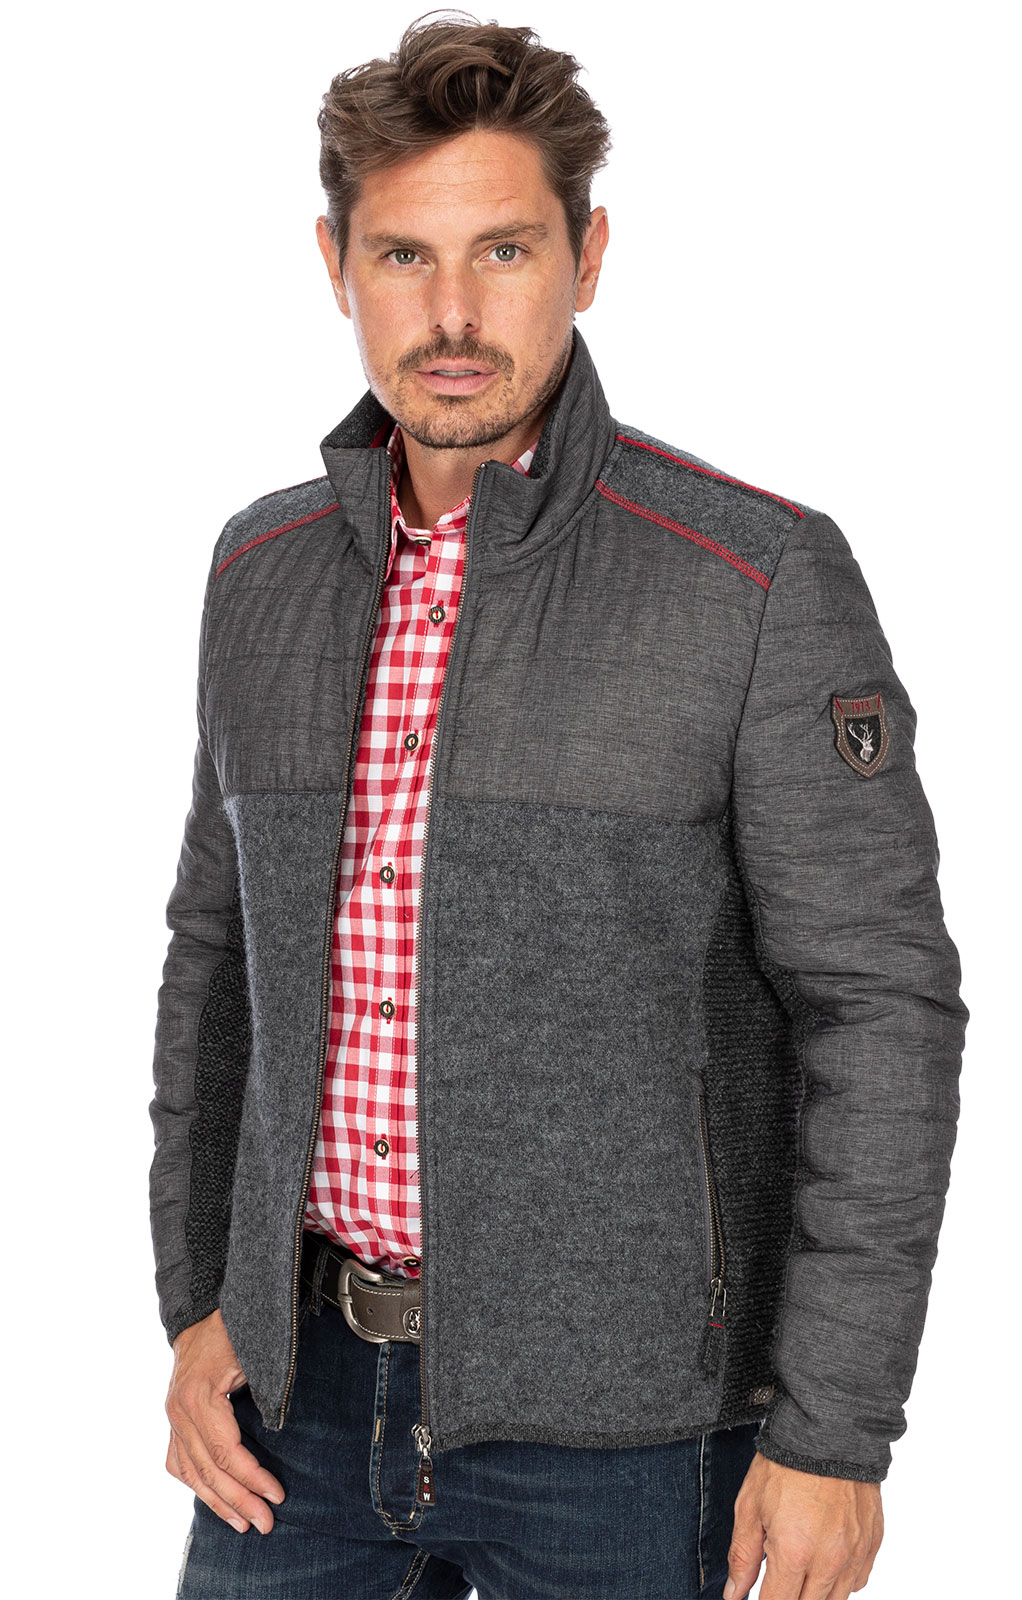 weitere Bilder von German traditional jacket MONTREAL medium gray red